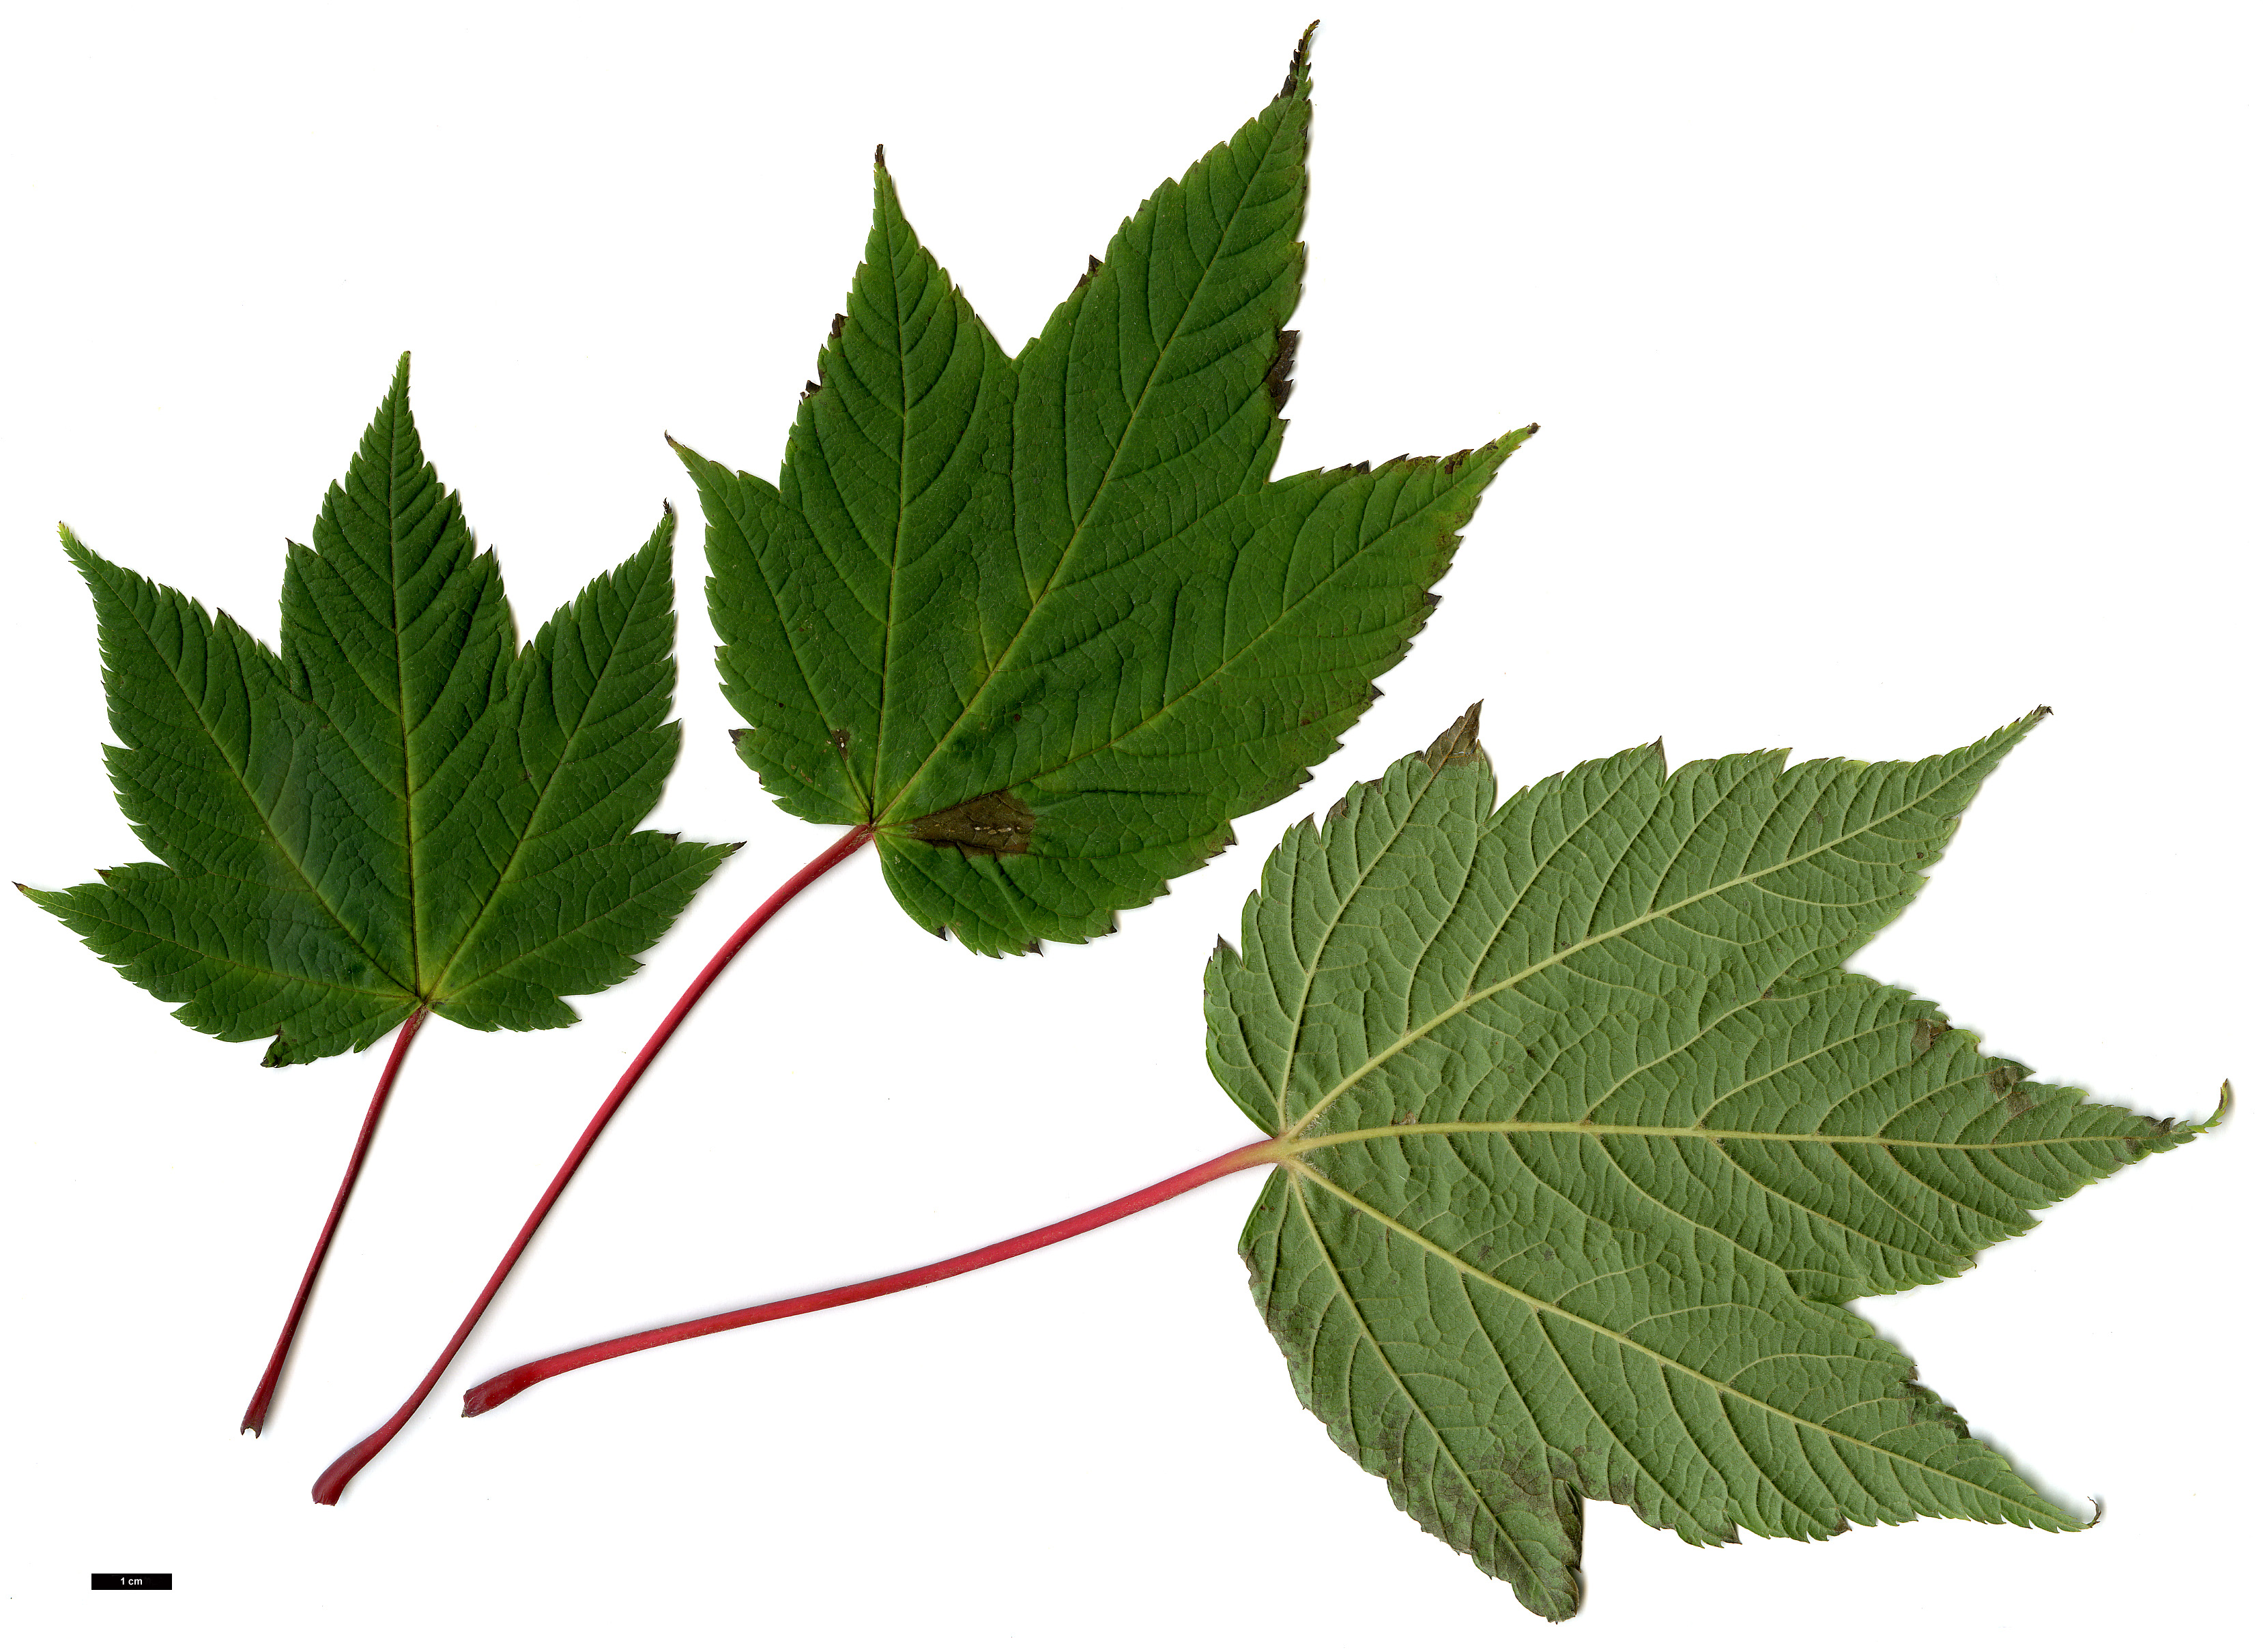 High resolution image: Family: Sapindaceae - Genus: Acer - Taxon: caudatum - SpeciesSub: var. georgei